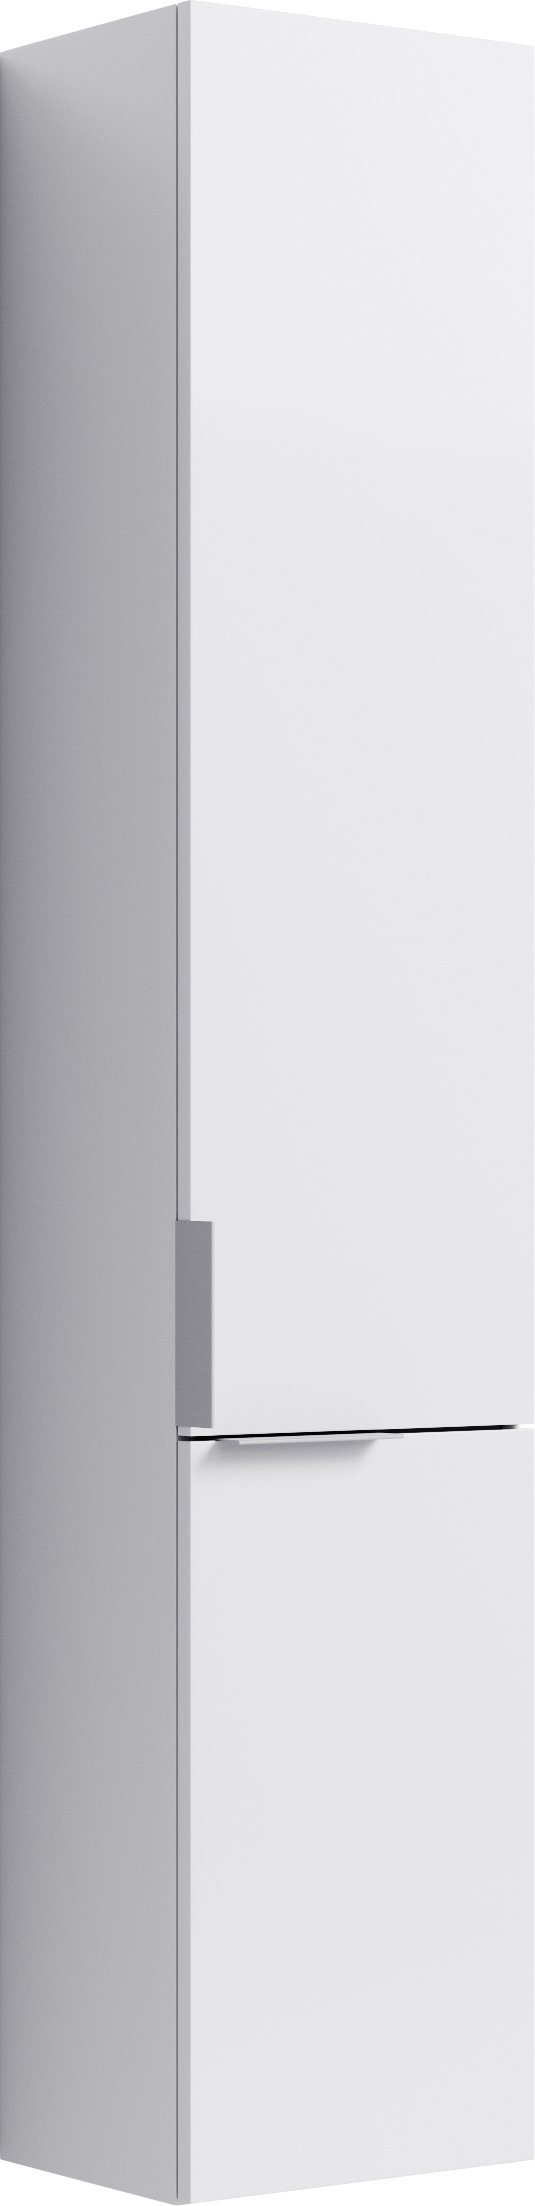 Шкаф-пенал Aqwella Brig 30 подвесной, белый, Br.05.03/W  - купить со скидкой